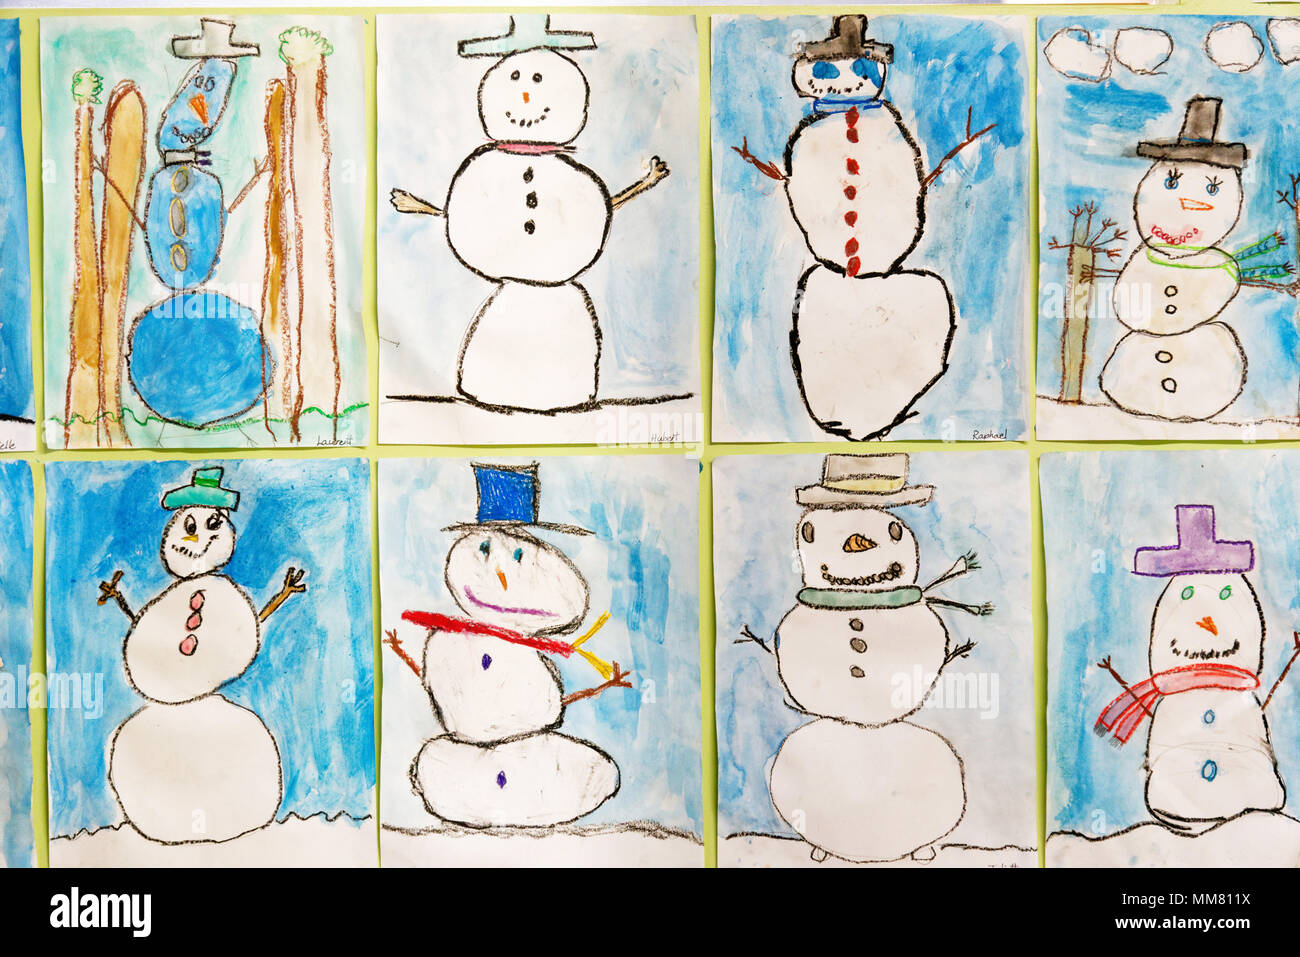 Bambini opere d'arte sulla parete nella loro scuola - Foto di pupazzi di neve Foto Stock